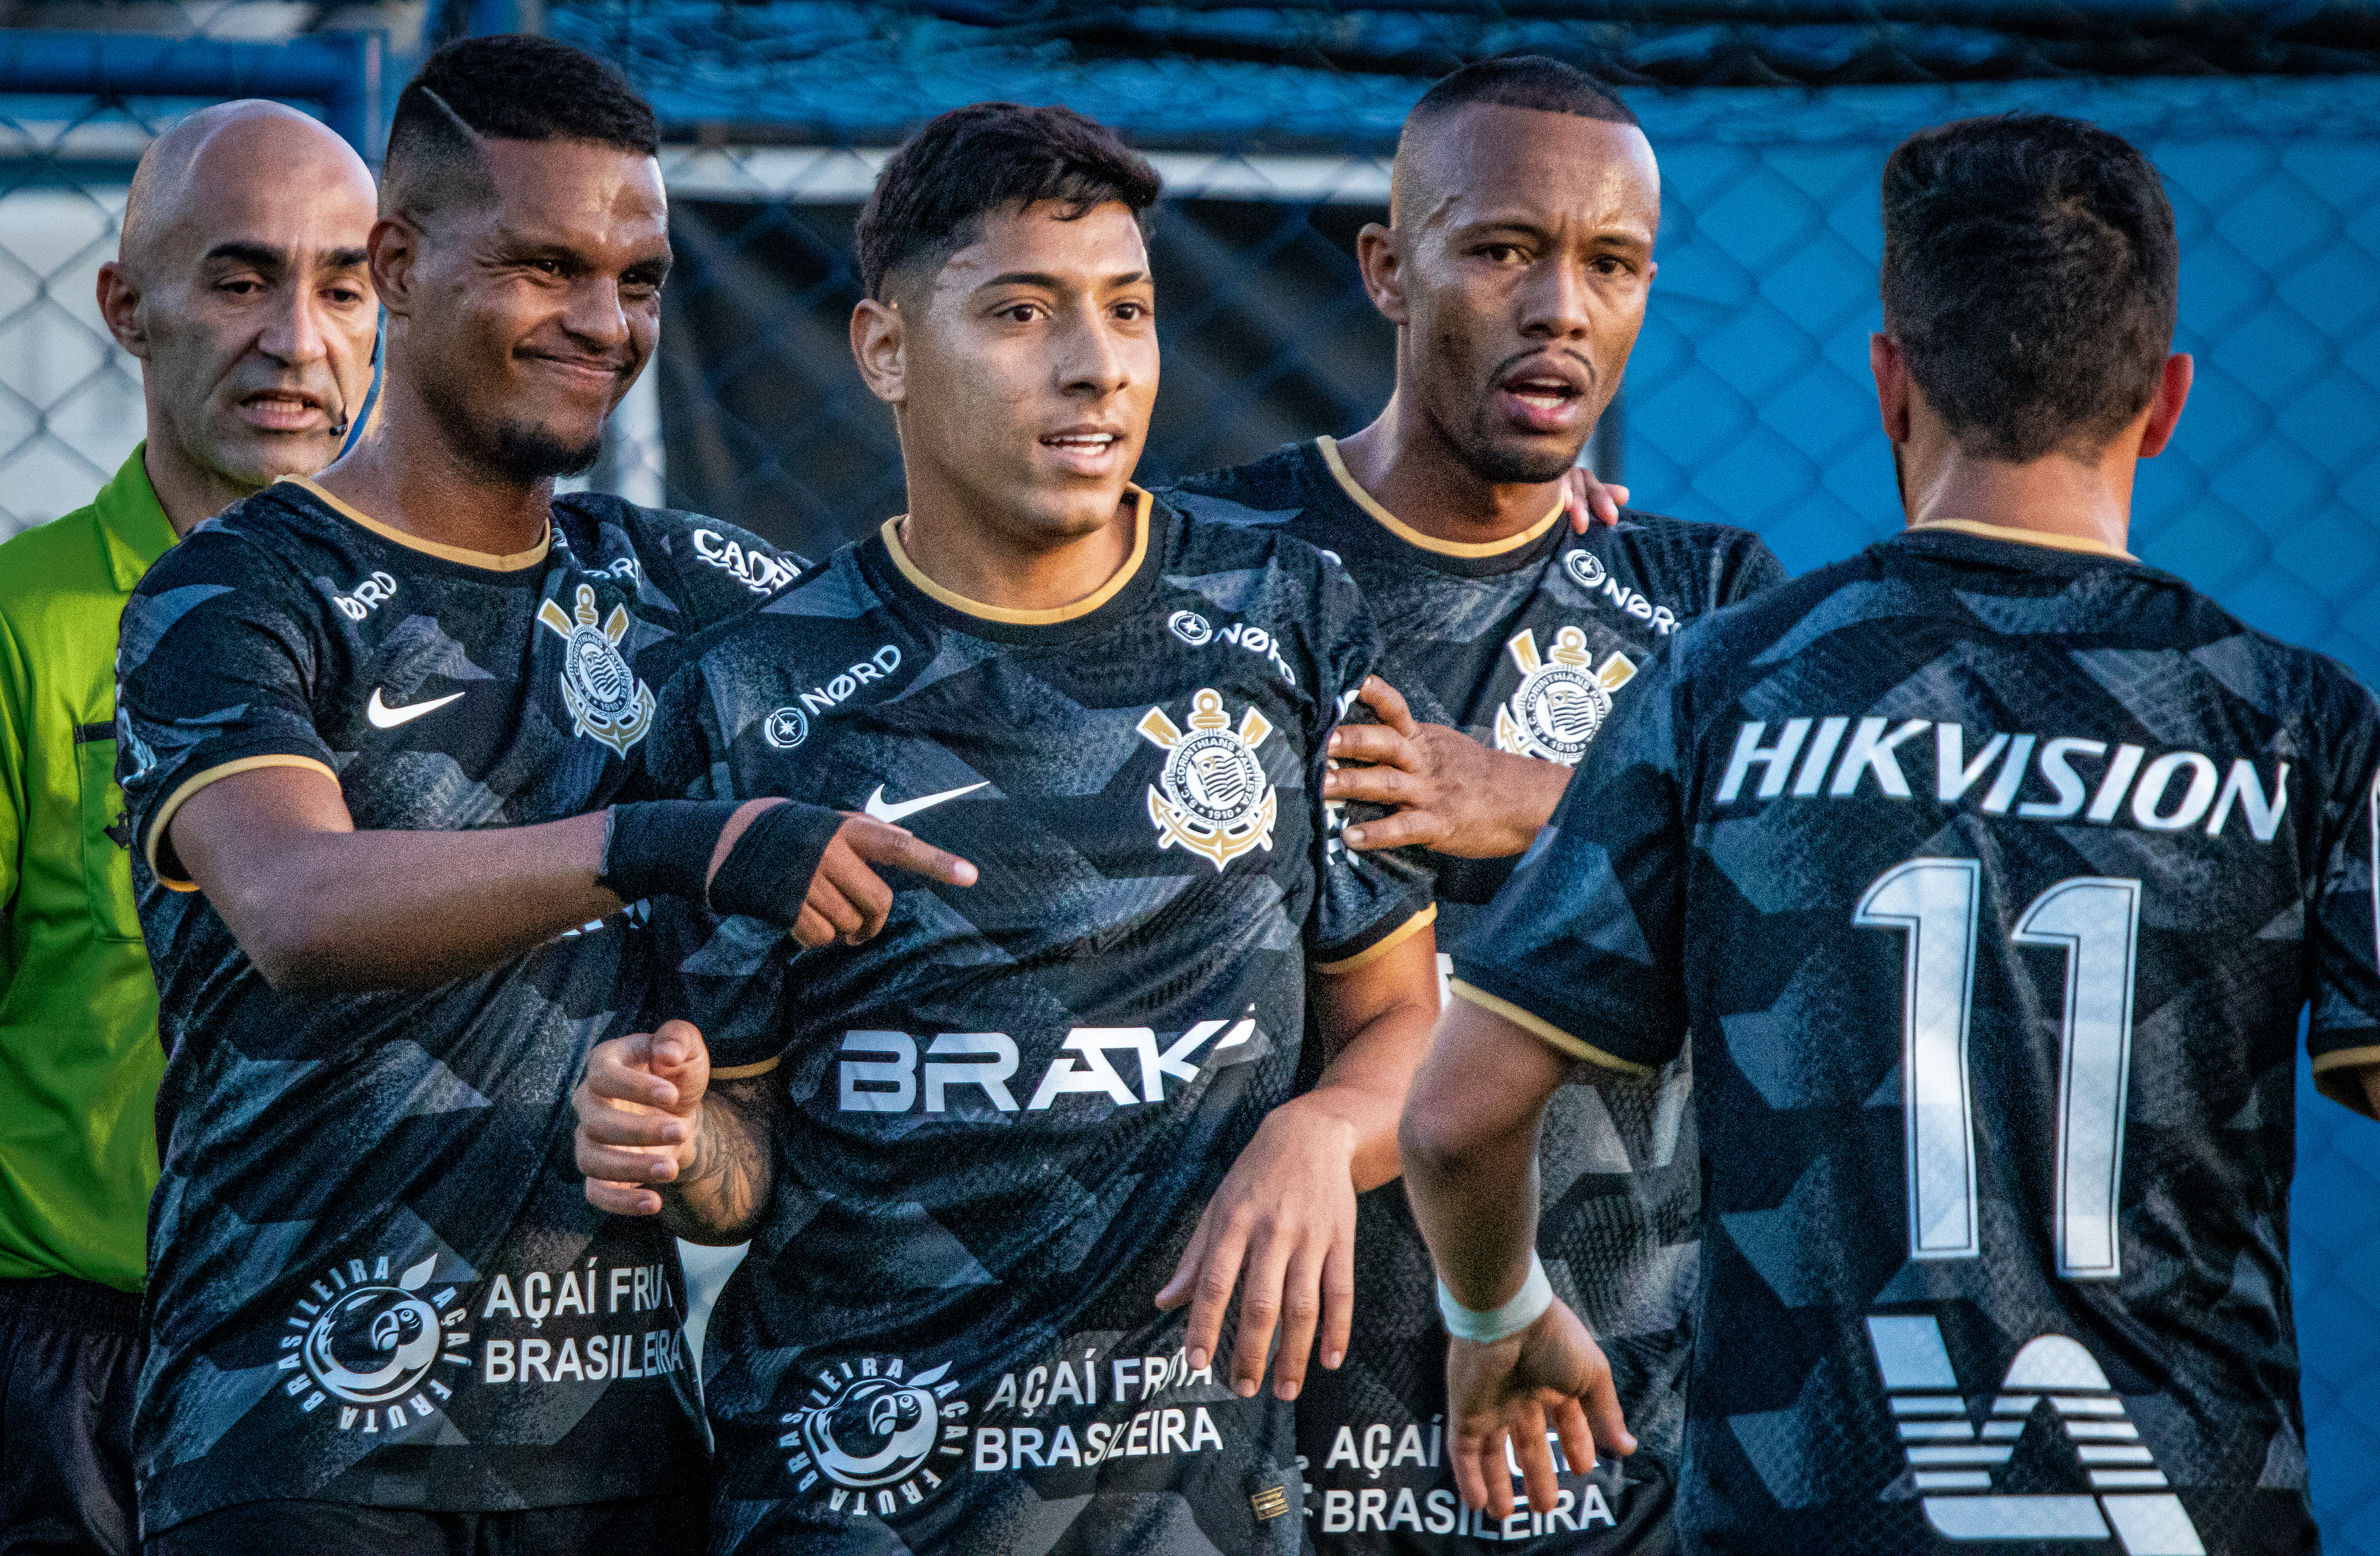 Eleição em dezembro vira preocupação no futebol do Corinthians - Futebol -  R7 Campeonato Paulista